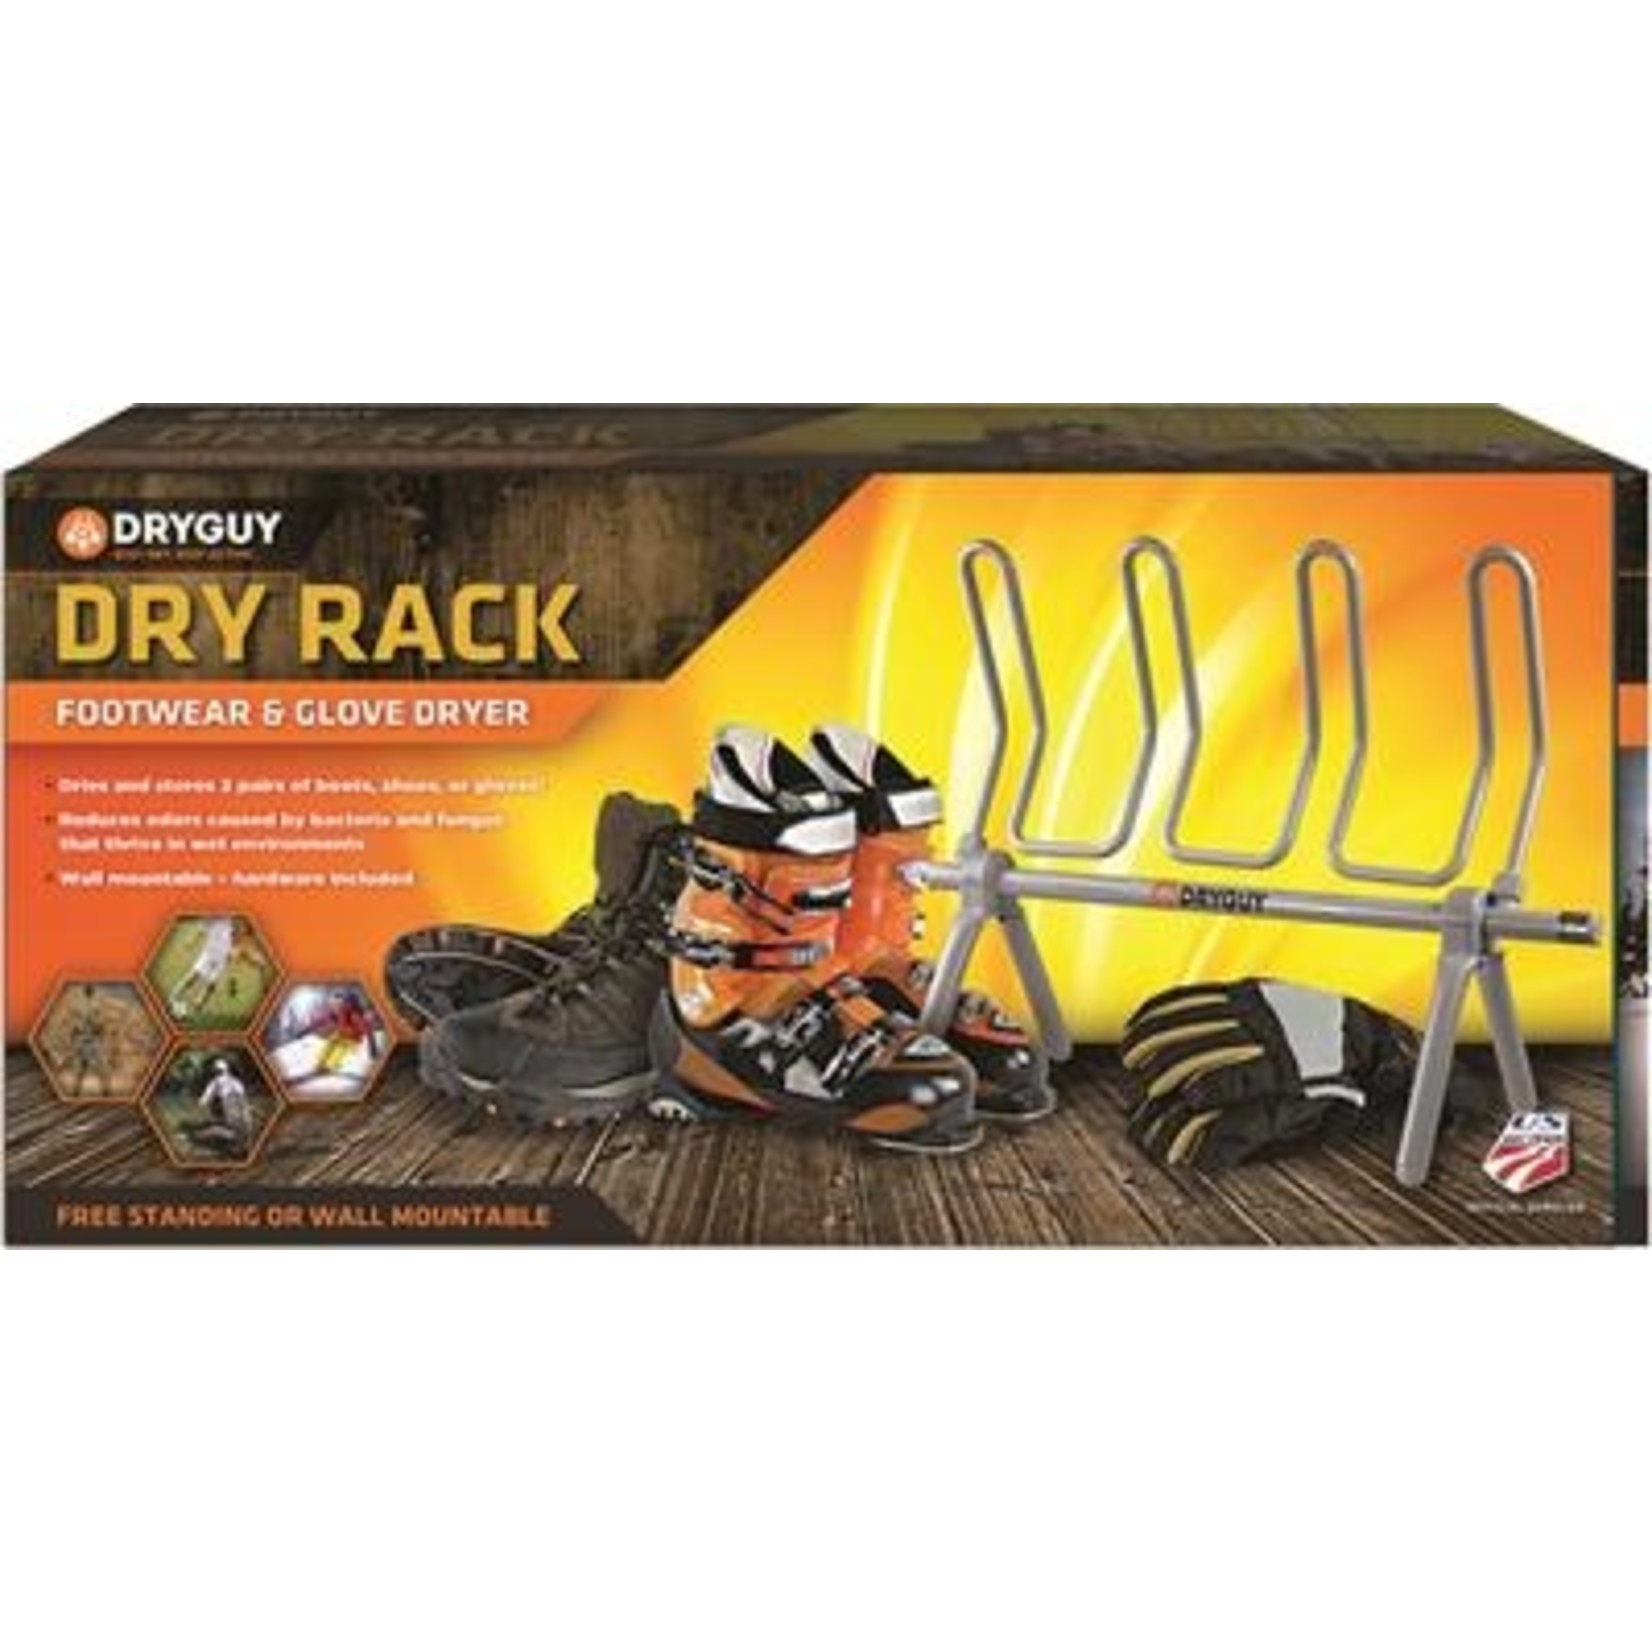 DryGuy Dry Rack